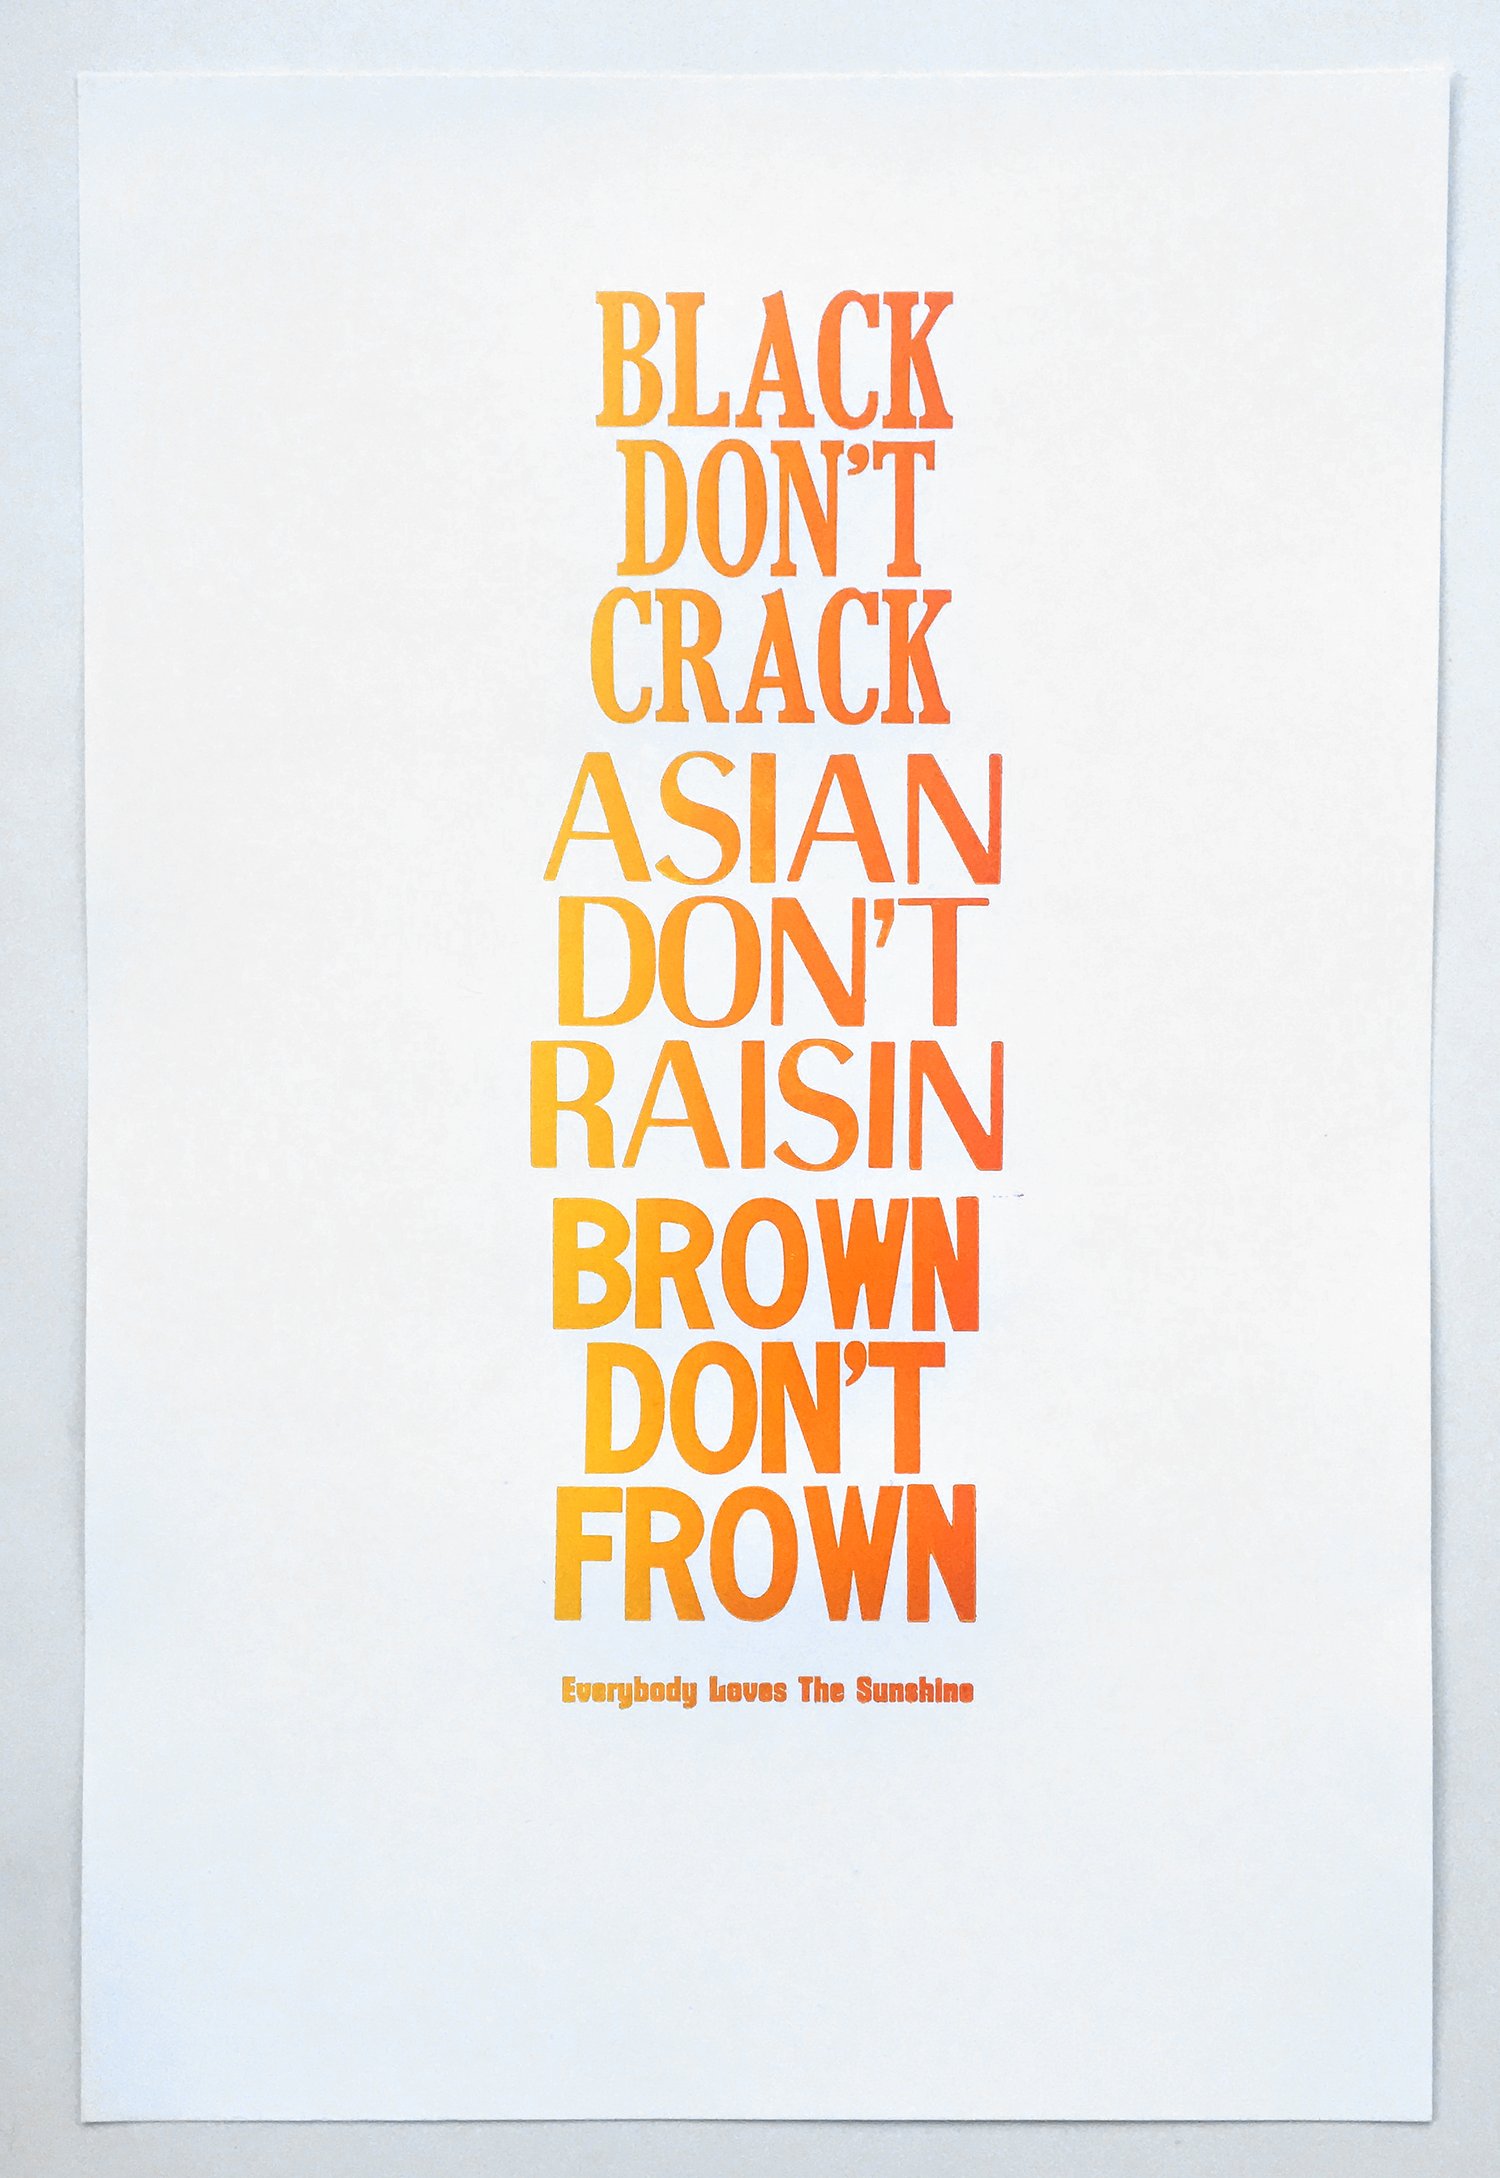 Image of Black Don't Crack poster